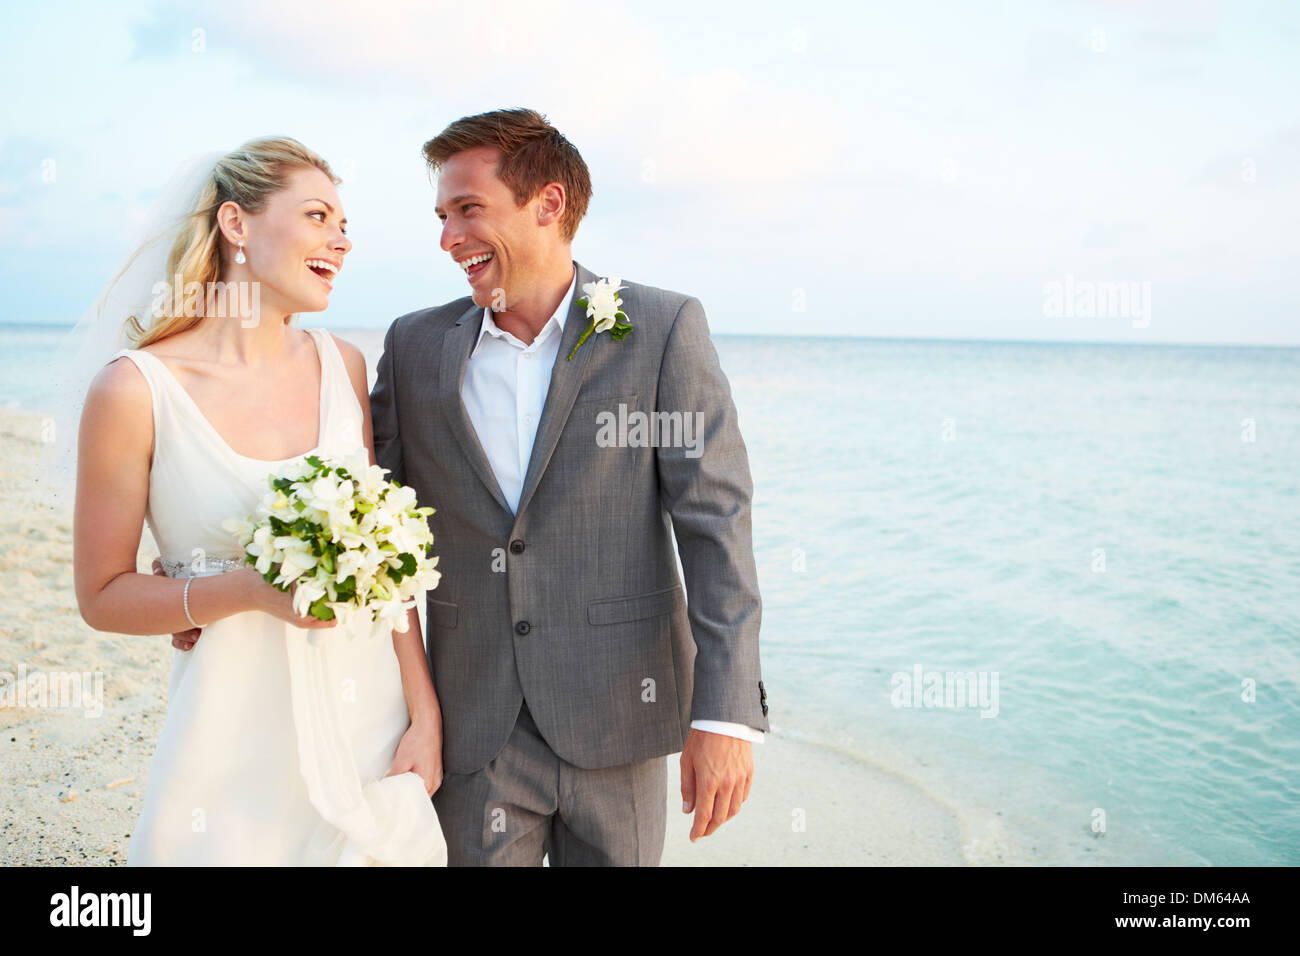 La novia y el novio Casarse en ceremonia de playa Foto de stock